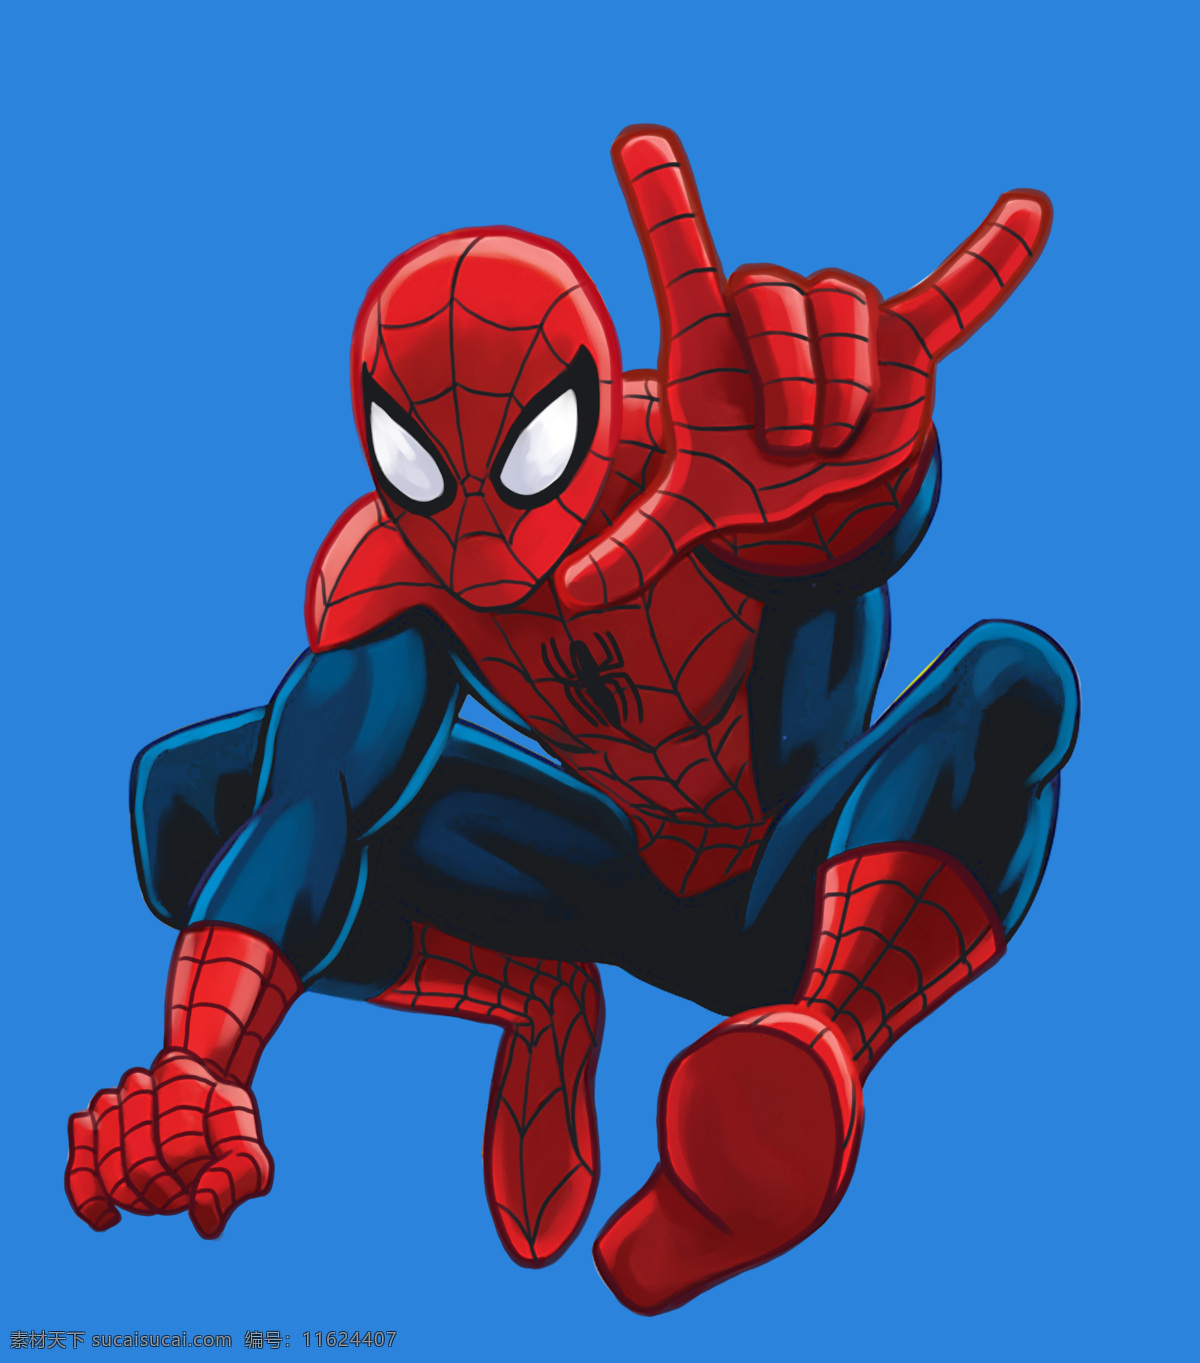 蜘蛛侠 英雄联盟 美国 电影 卡通 动画 复仇者联盟